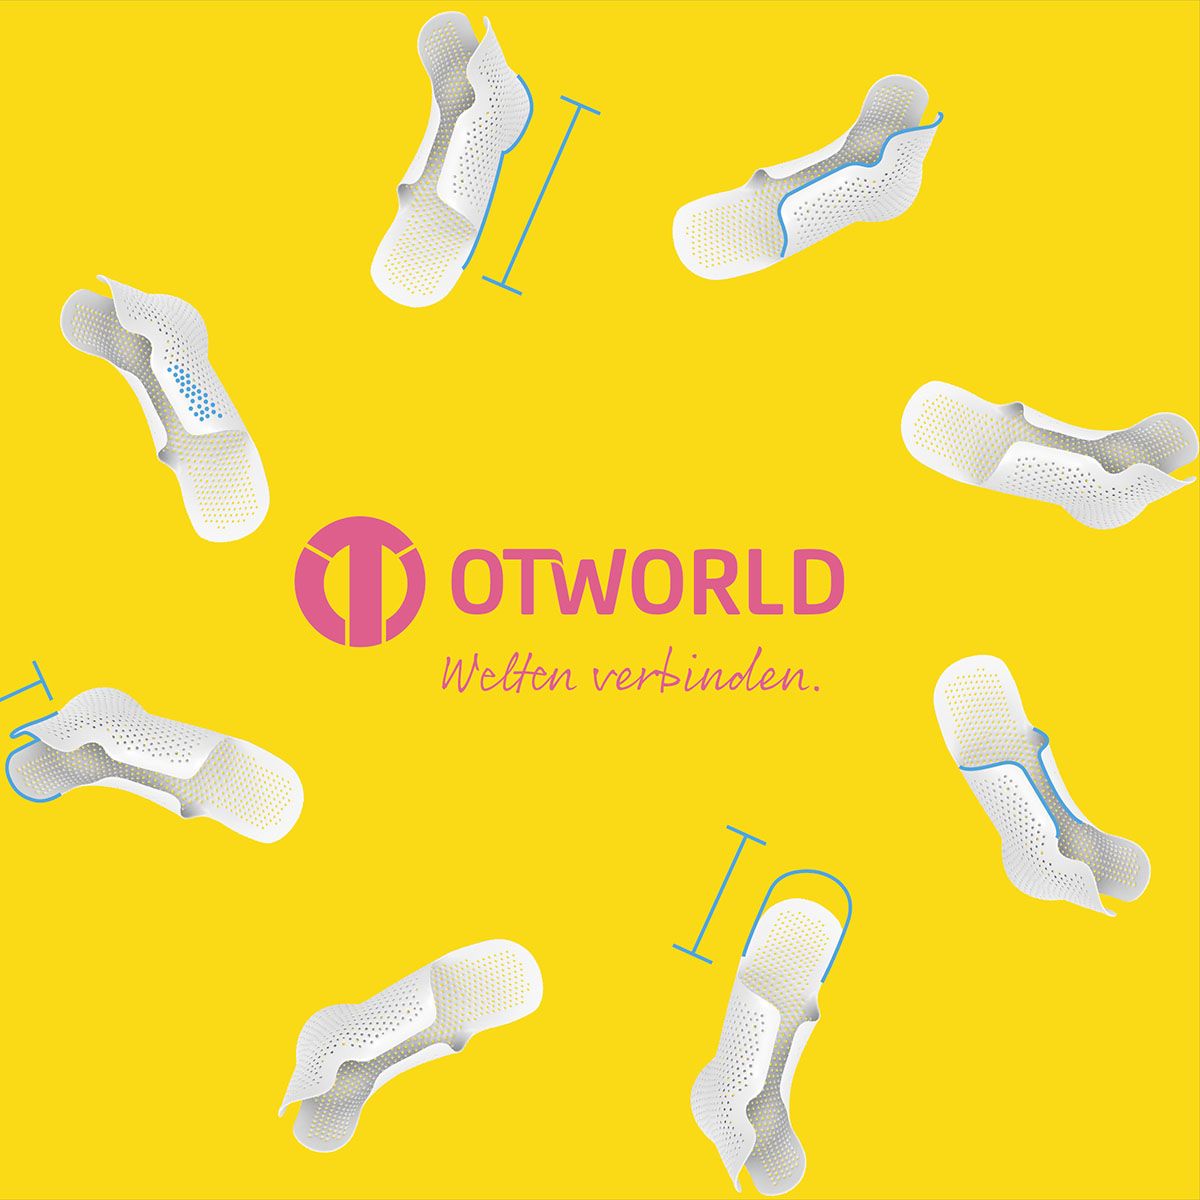 OT-World